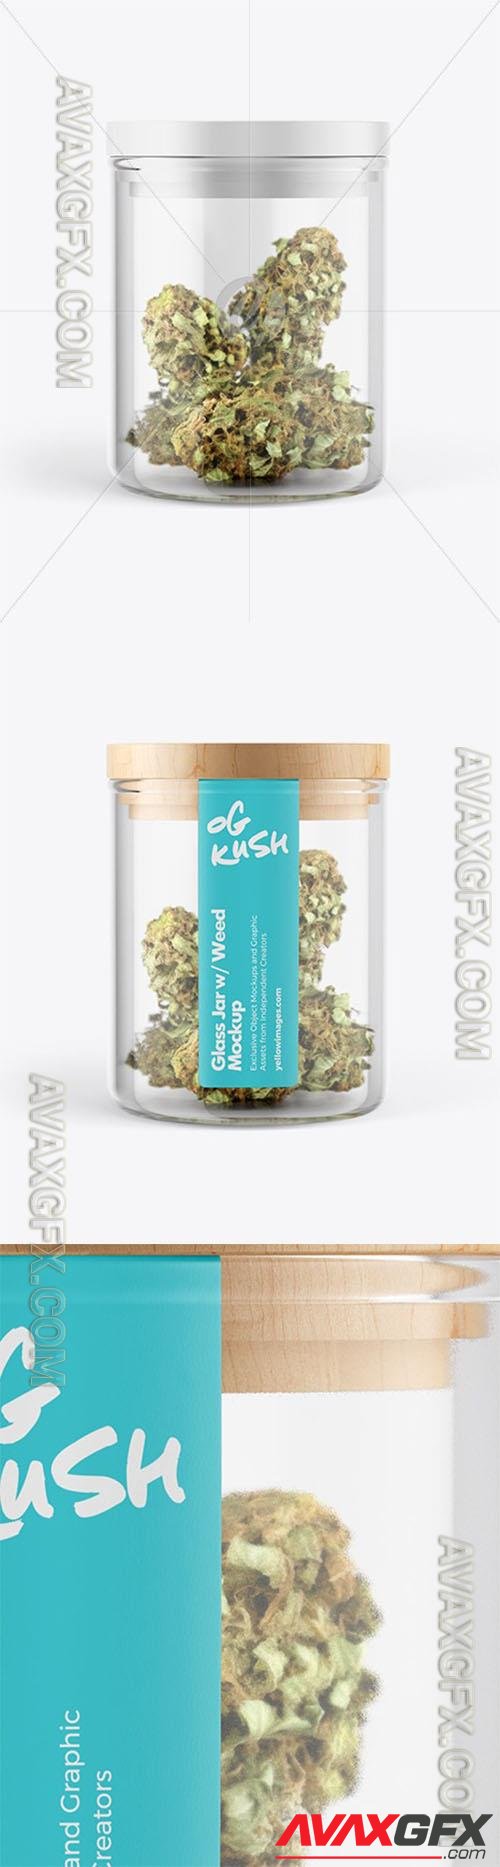 Glass Jar w/ Weed Buds Mockup 50219 TIF